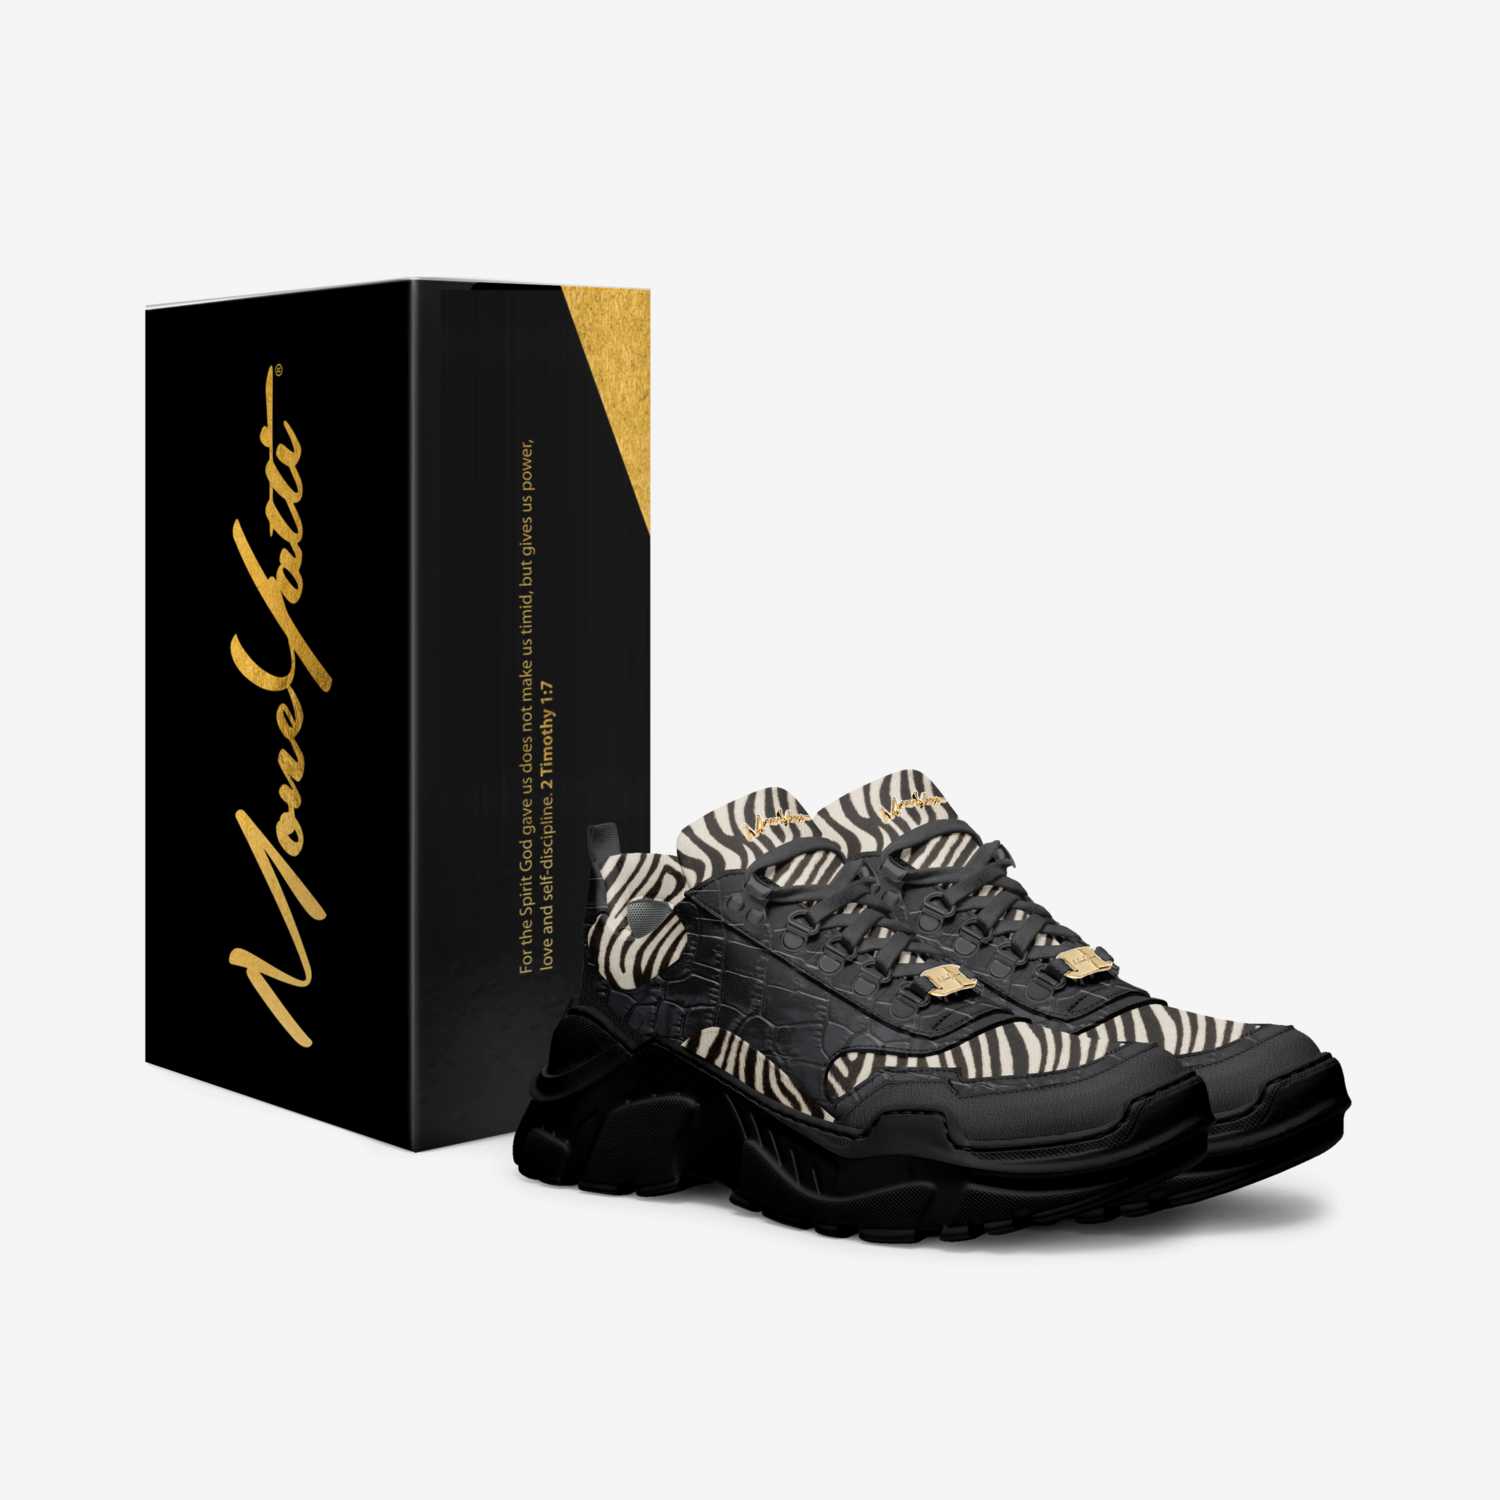 Moneyatti MurksH08 custom made in Italy shoes by Moneyatti Brand | Box view